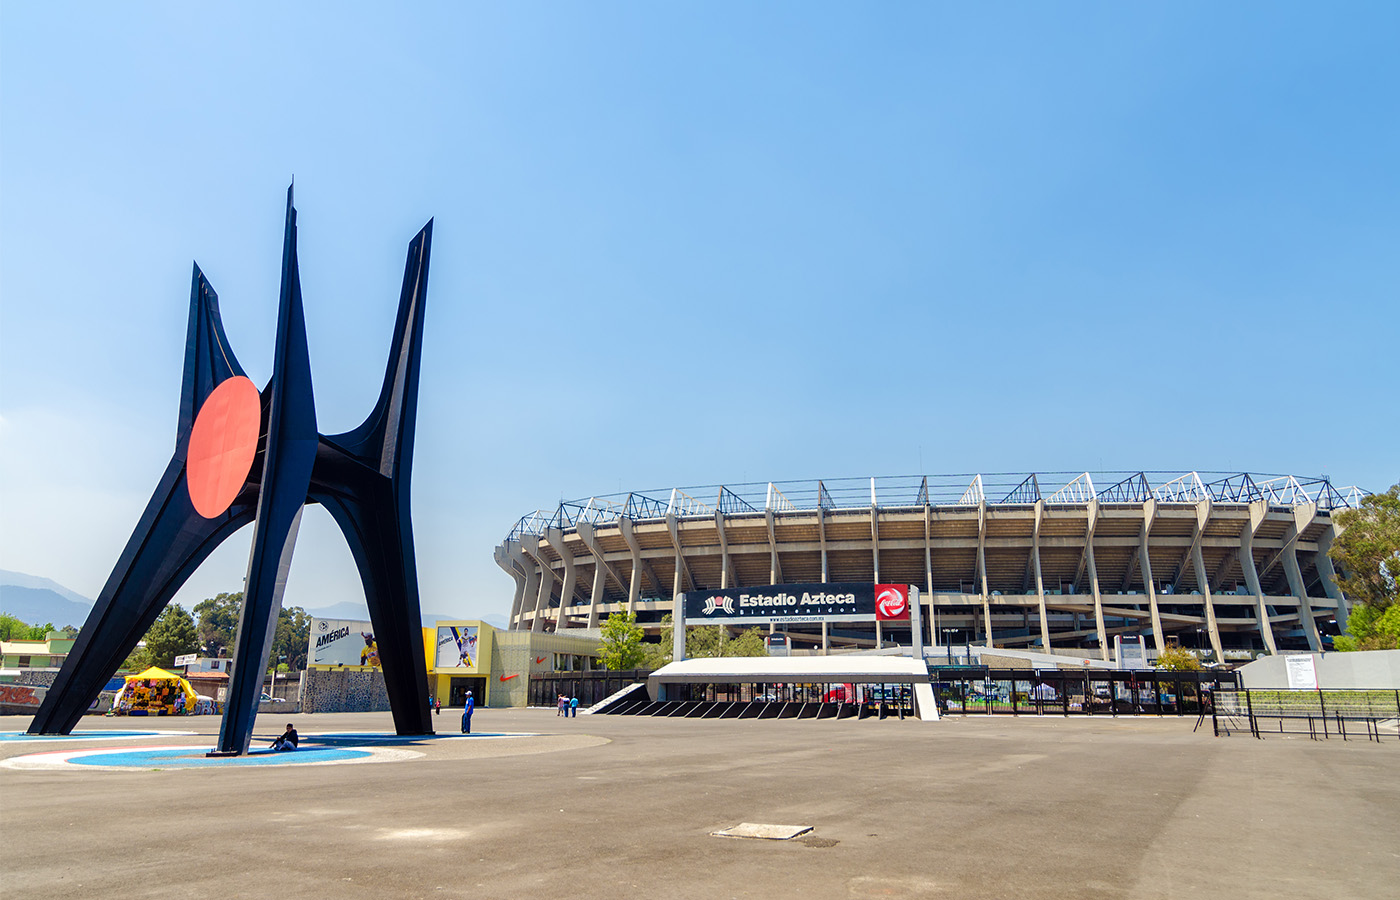 Vivir cerca del Estadio Azteca, sede de la Copa Mundial México 2026